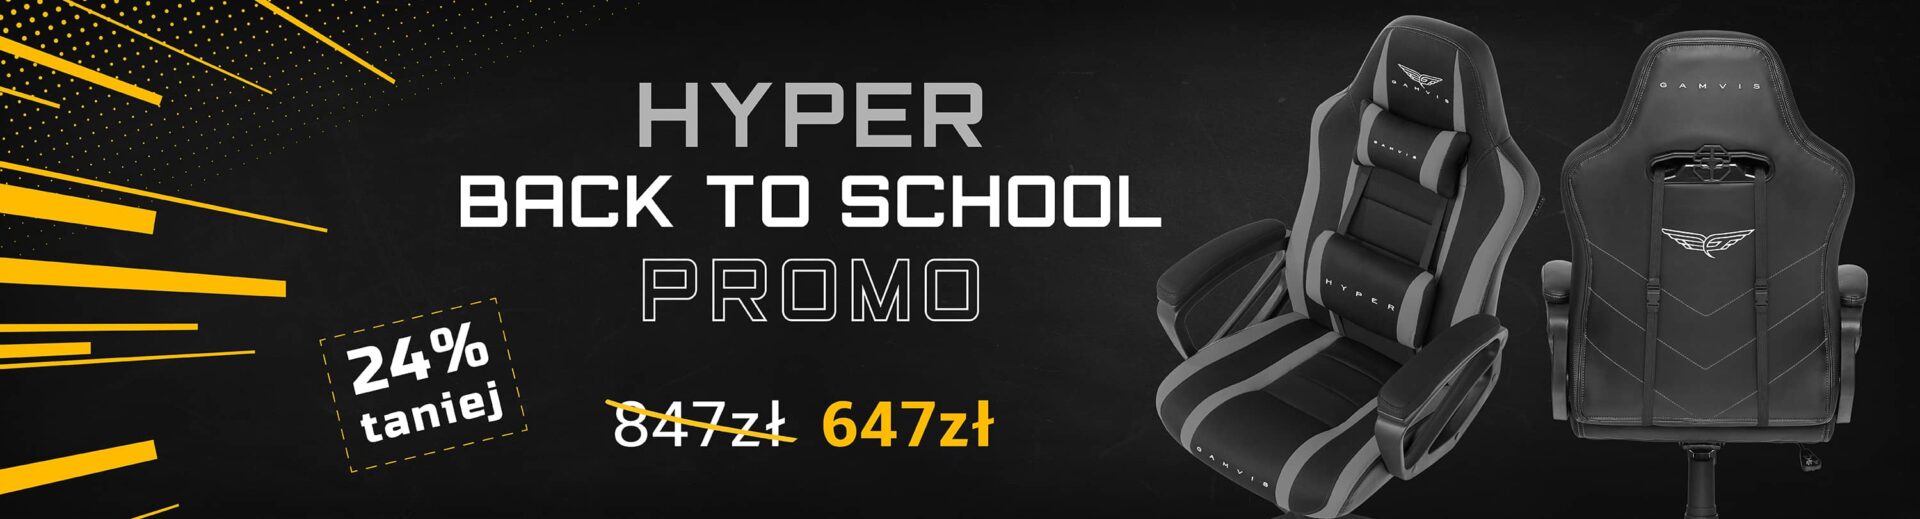 Hyper Back to School promo-1-min